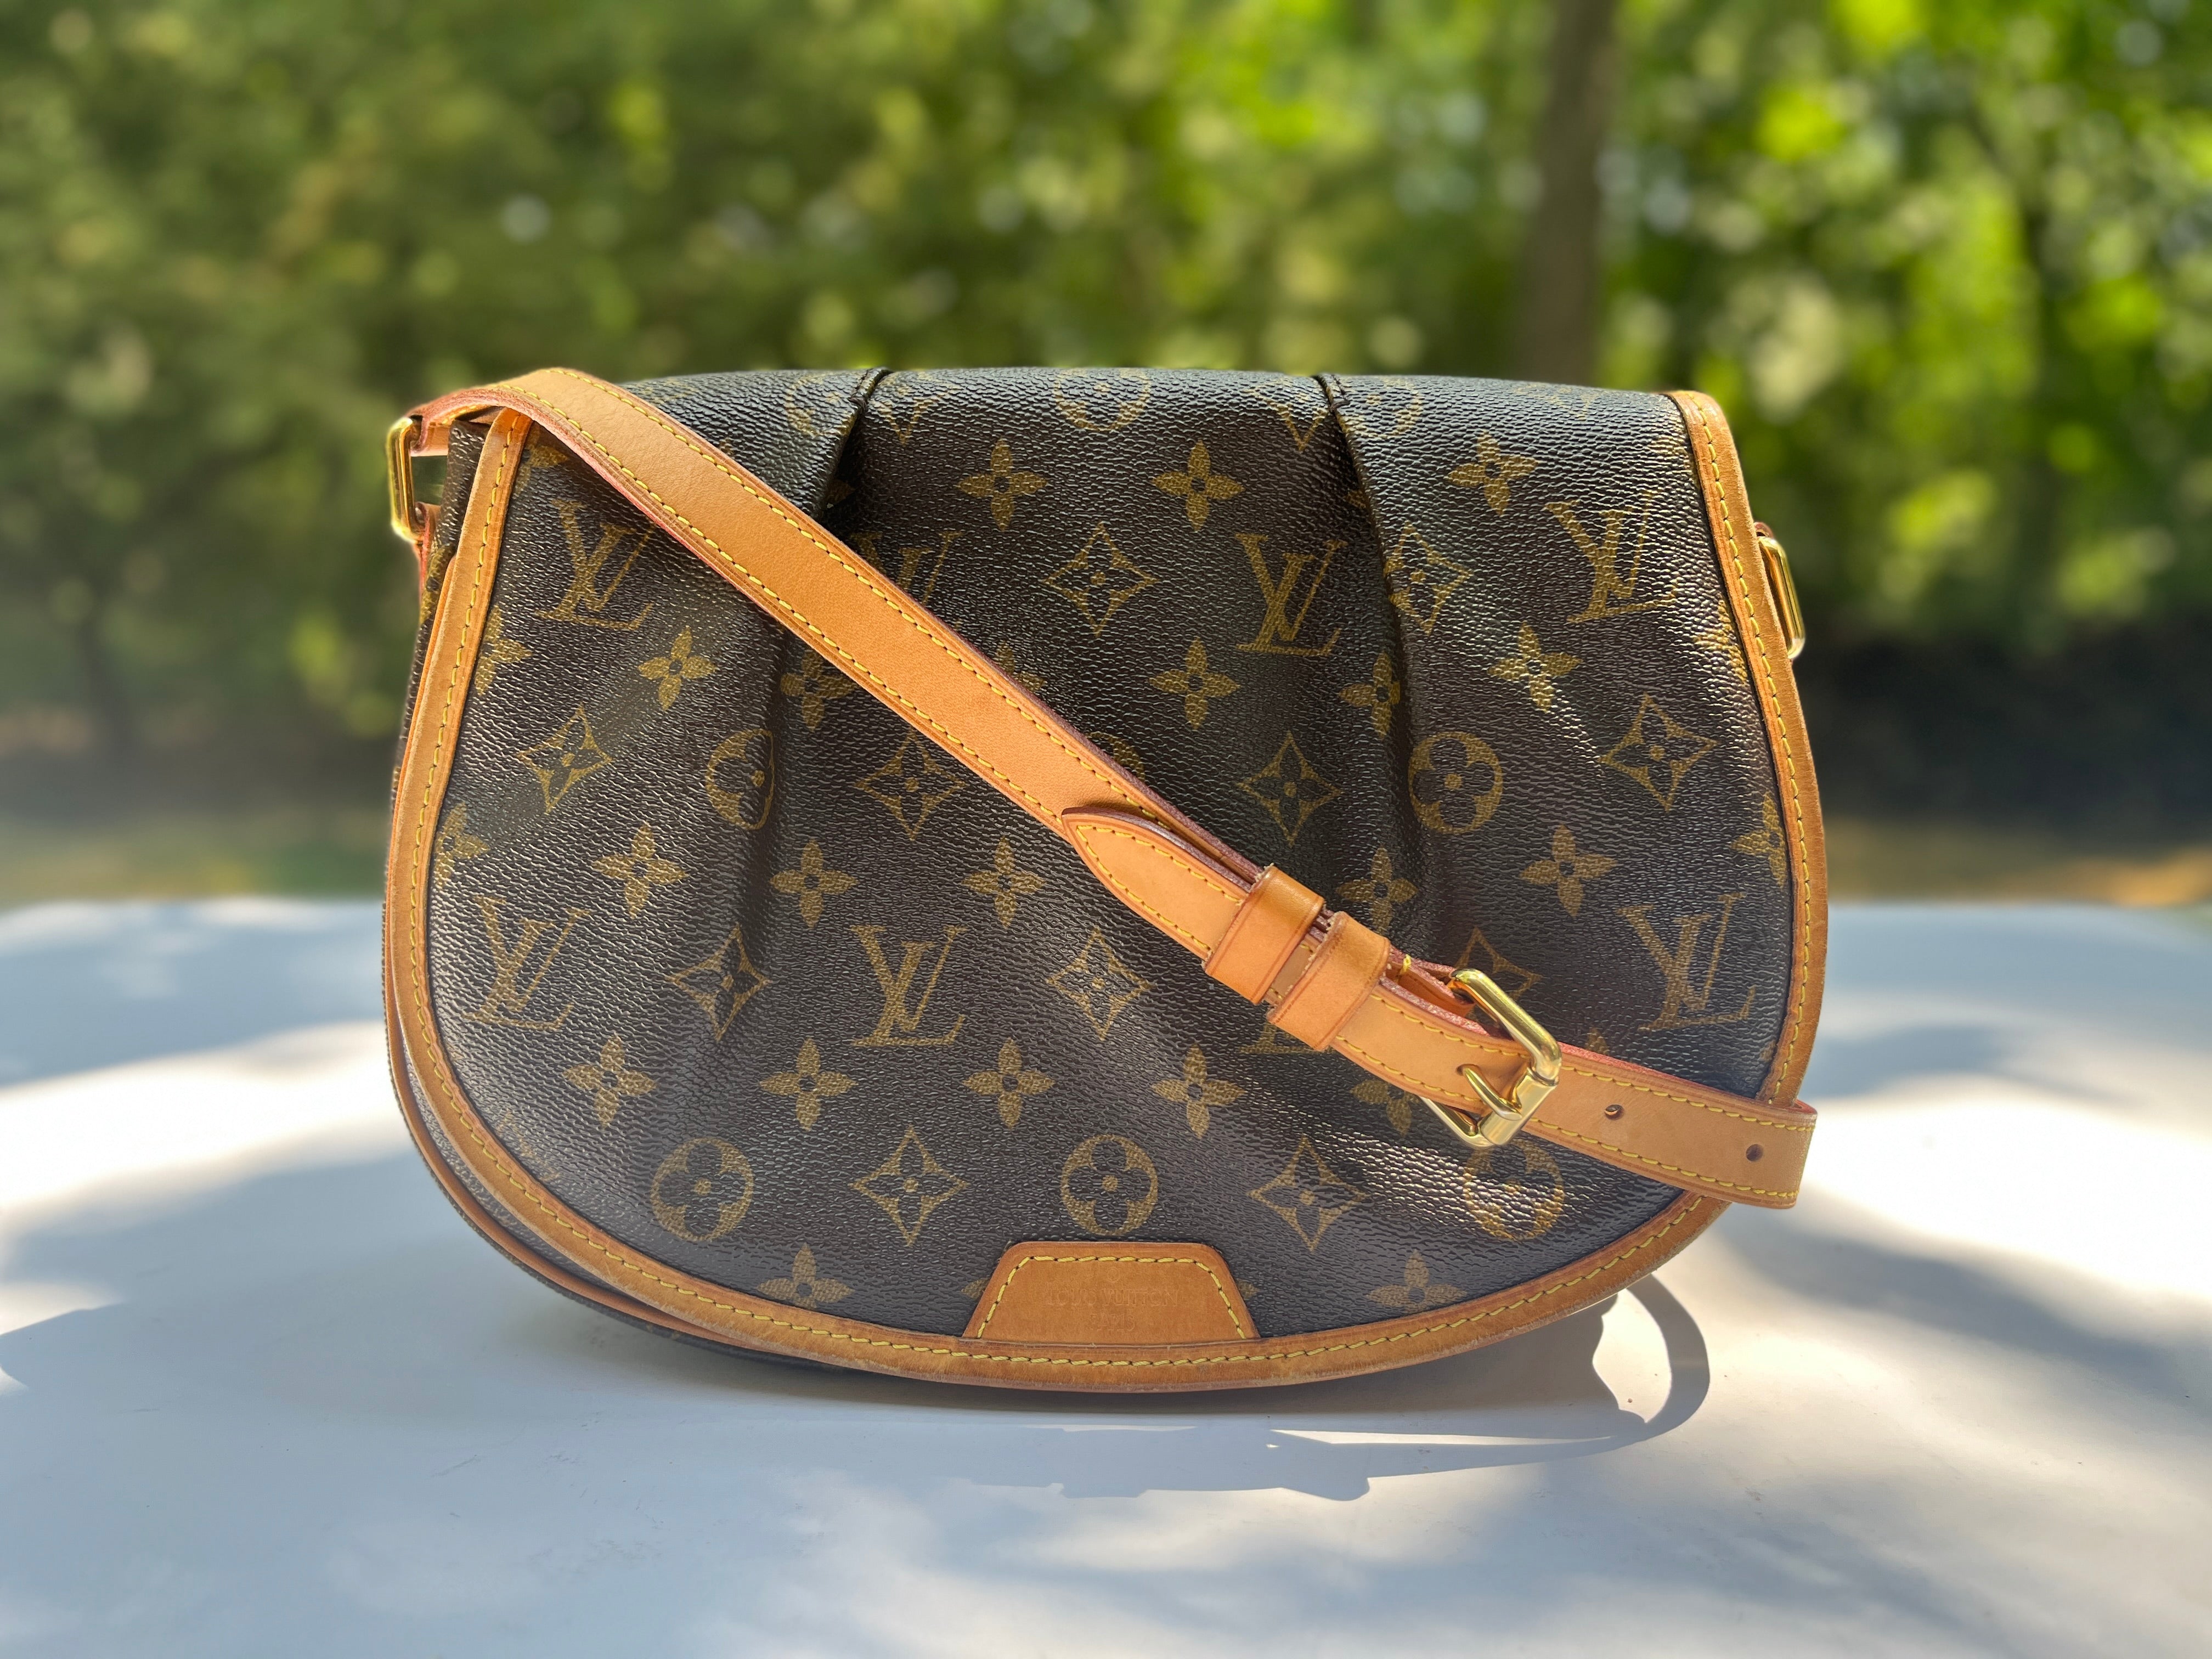 Louis Vuitton, Bags, Louis Vuitton Menilmontant Crossbody Bag Gm